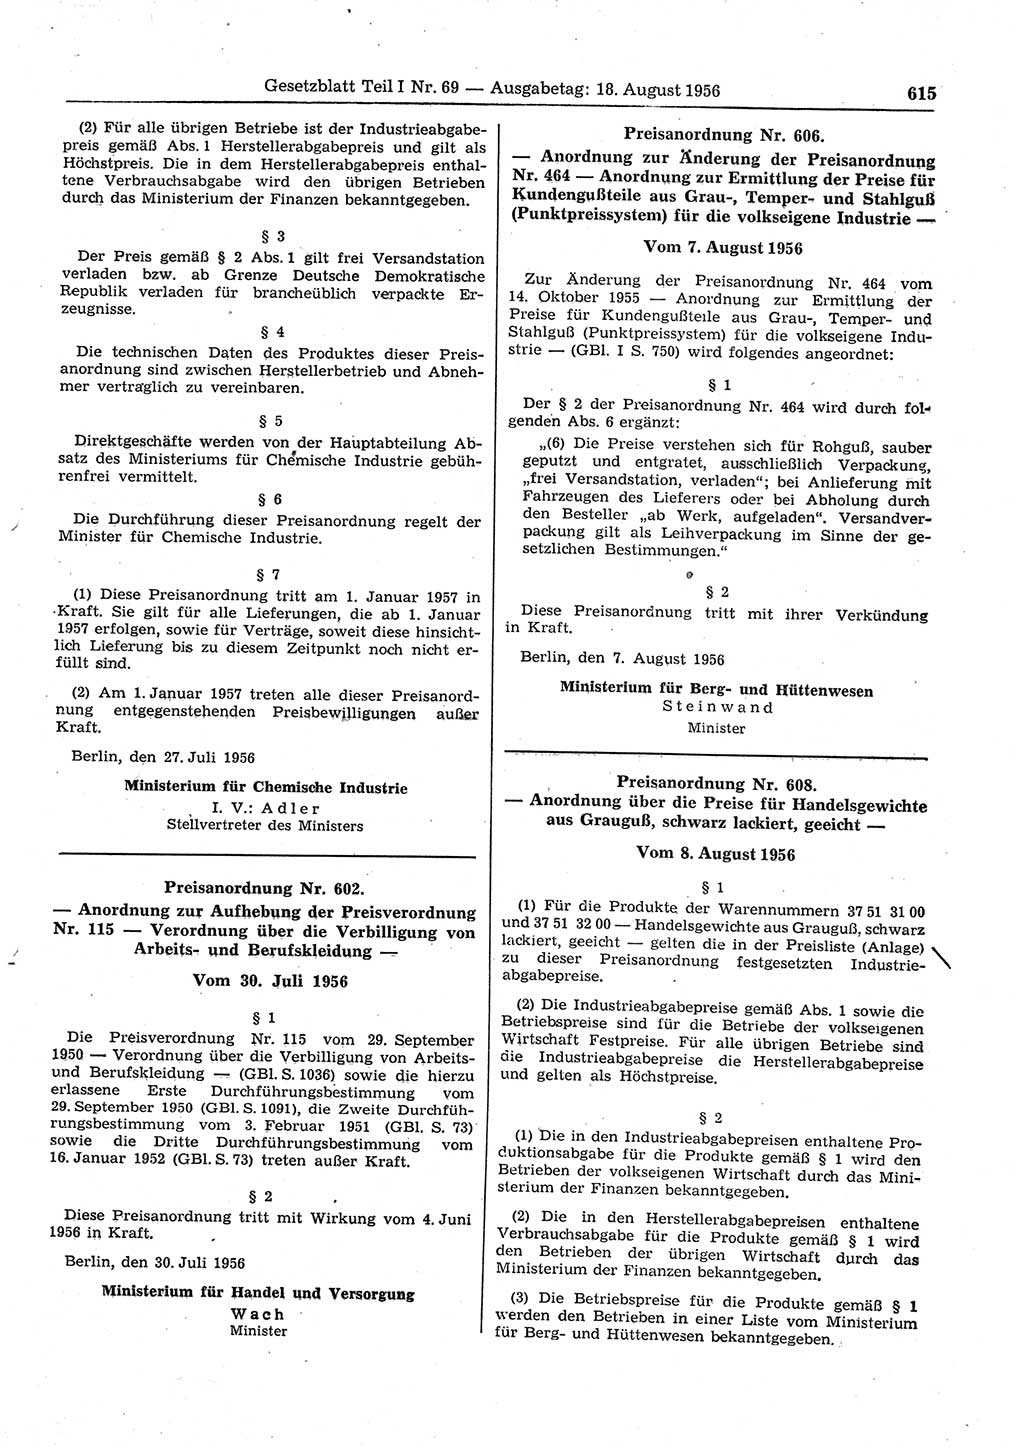 Gesetzblatt (GBl.) der Deutschen Demokratischen Republik (DDR) Teil Ⅰ 1956, Seite 615 (GBl. DDR Ⅰ 1956, S. 615)